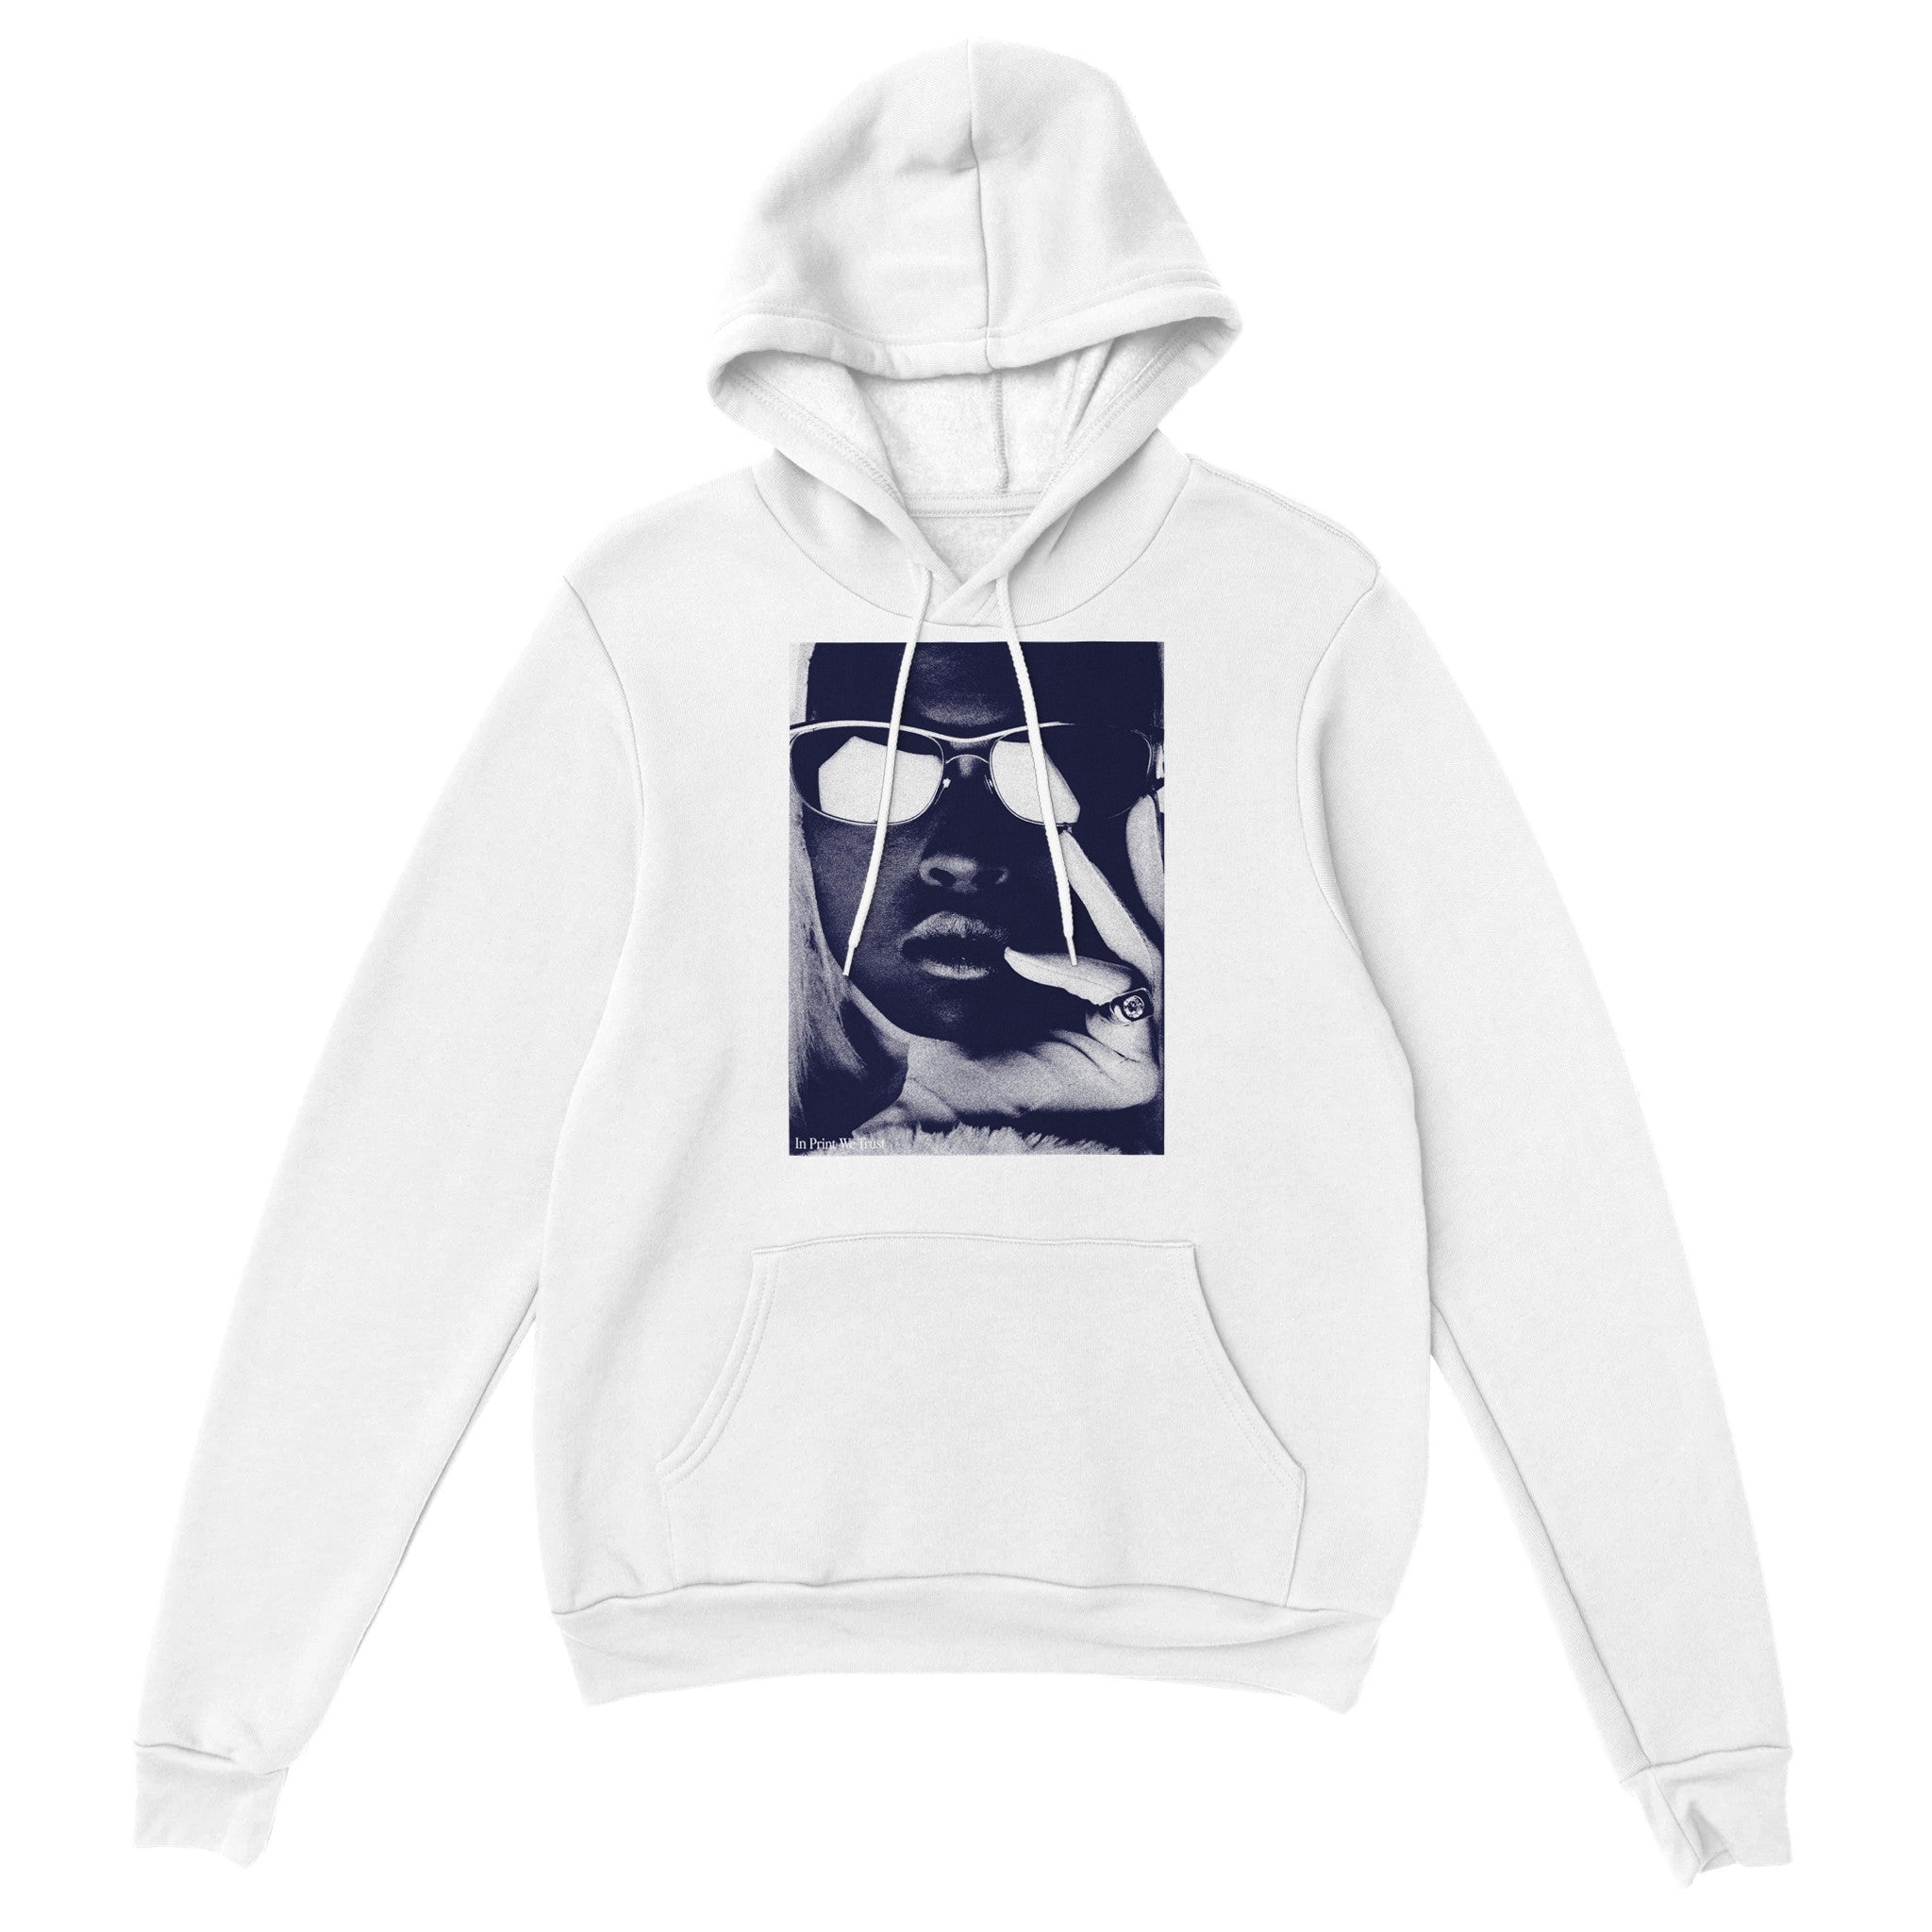 'Focus' hoodie - In Print We Trust